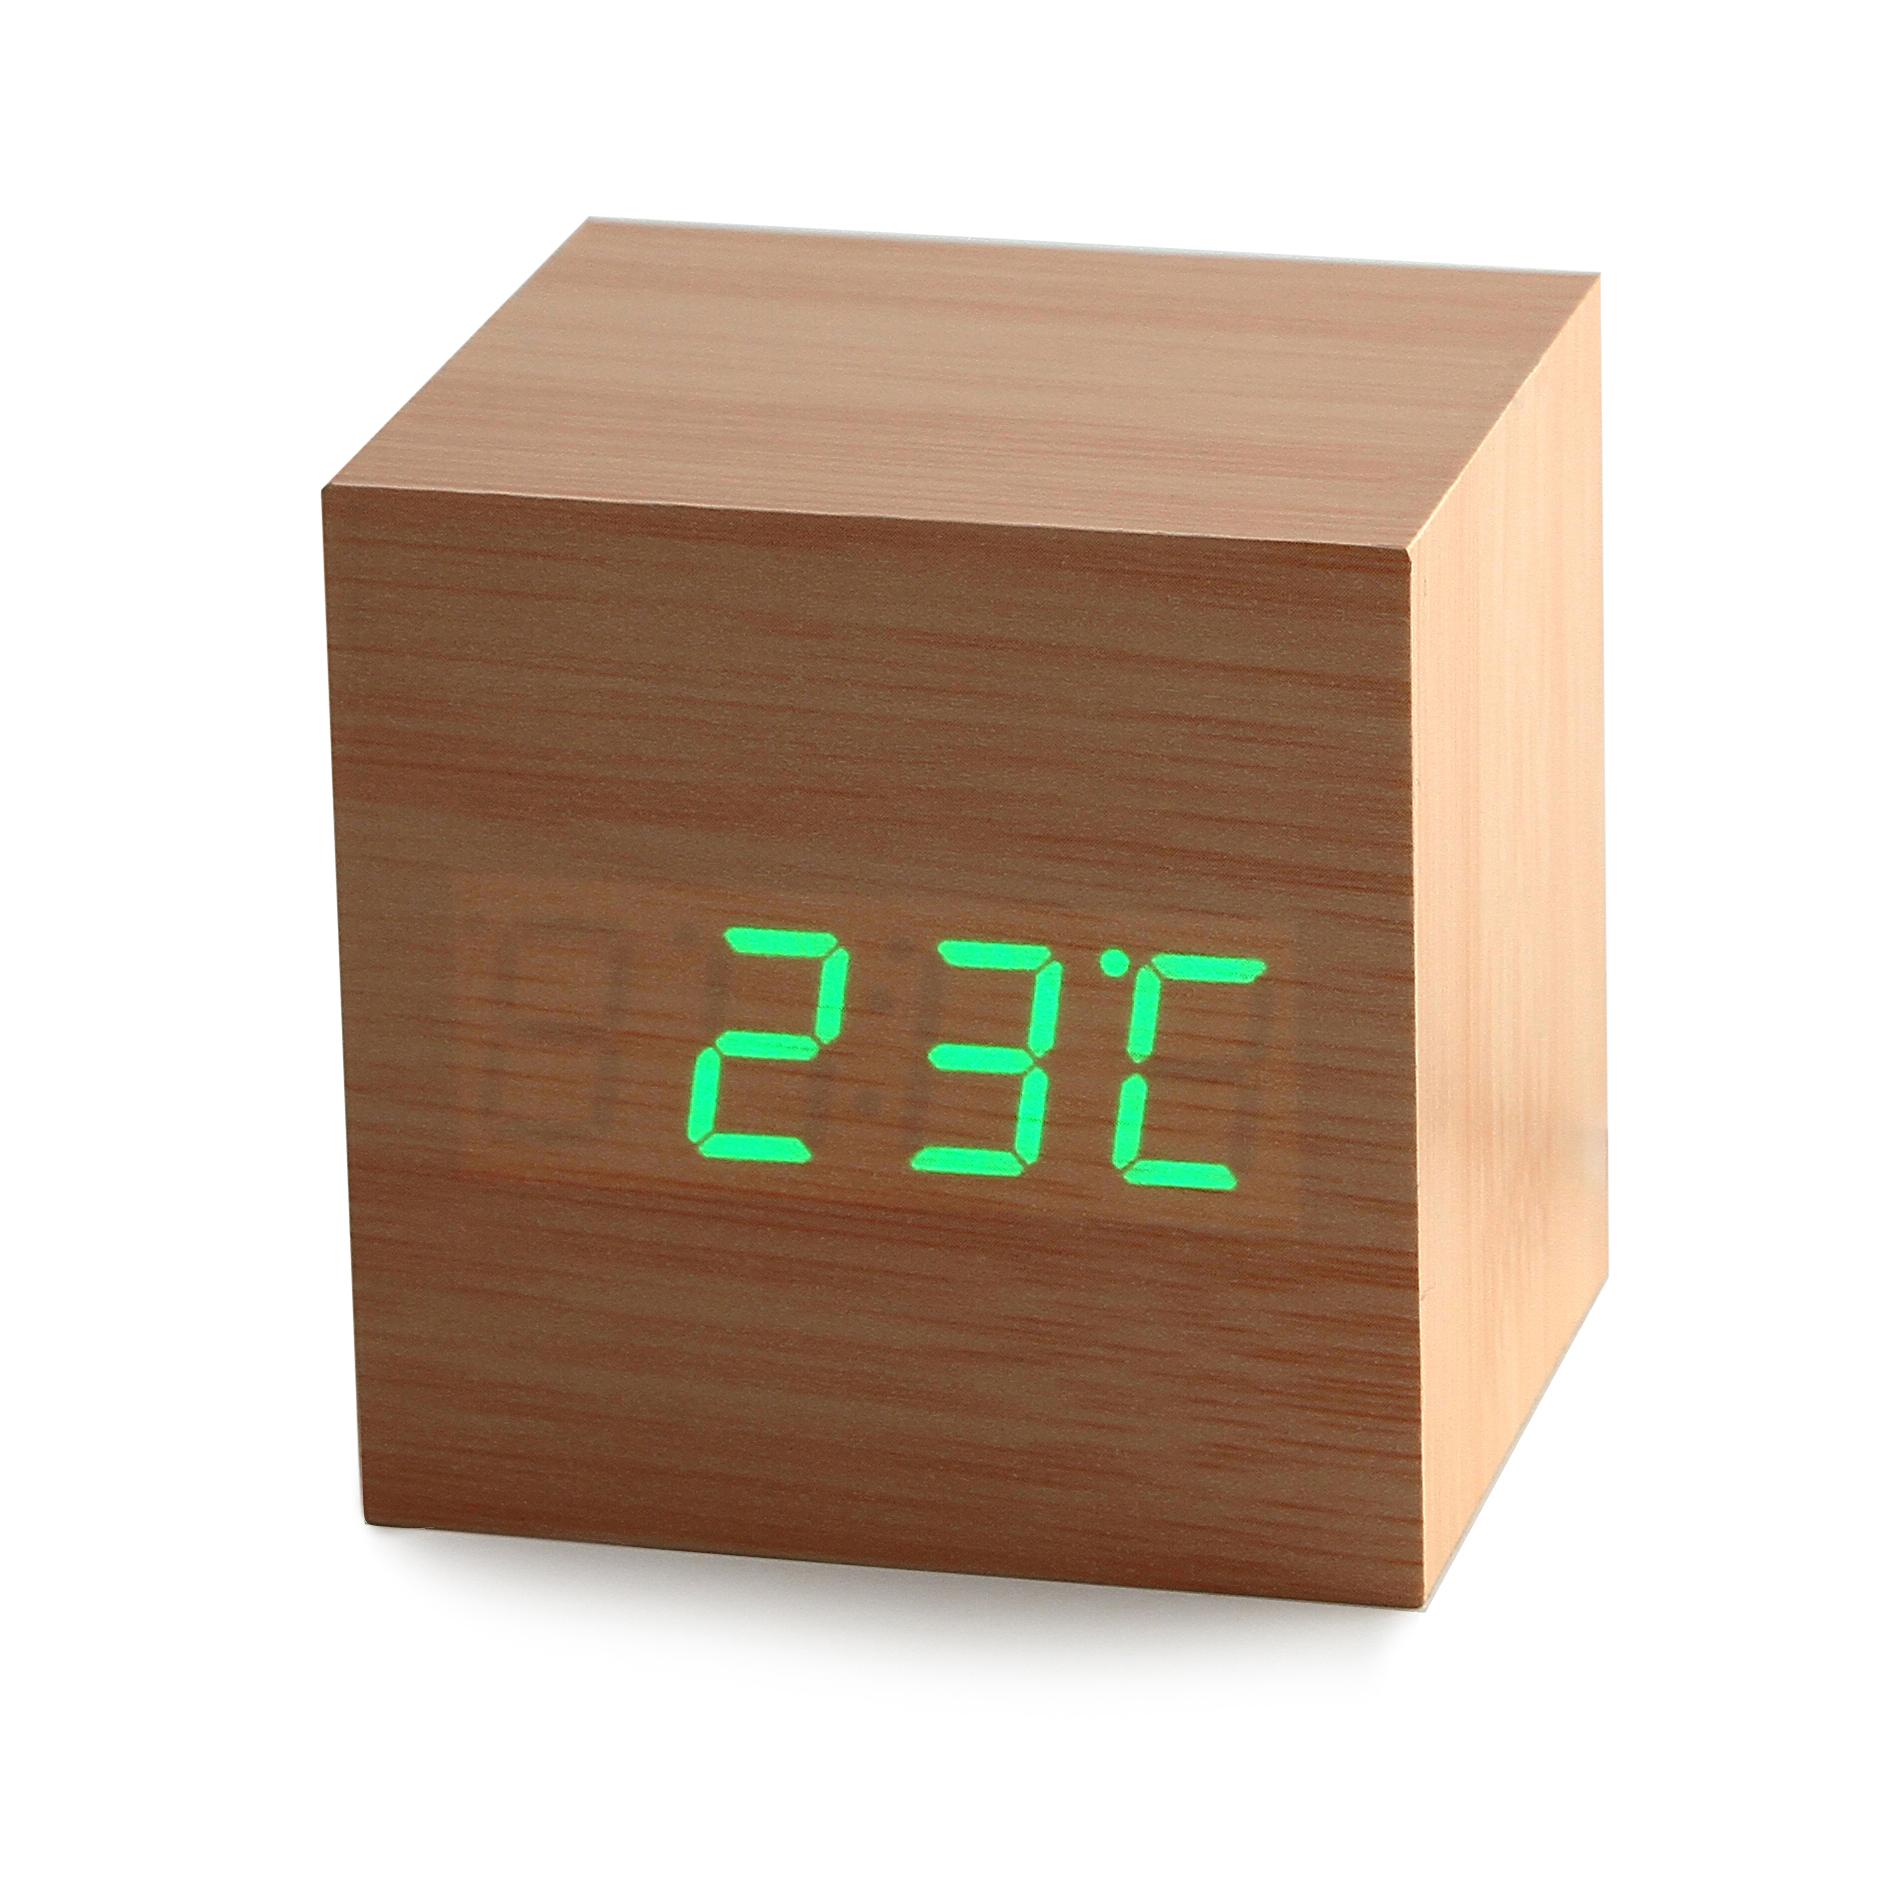 Часы будильник с показаниями температуры, даты и времени  CG wood clock green